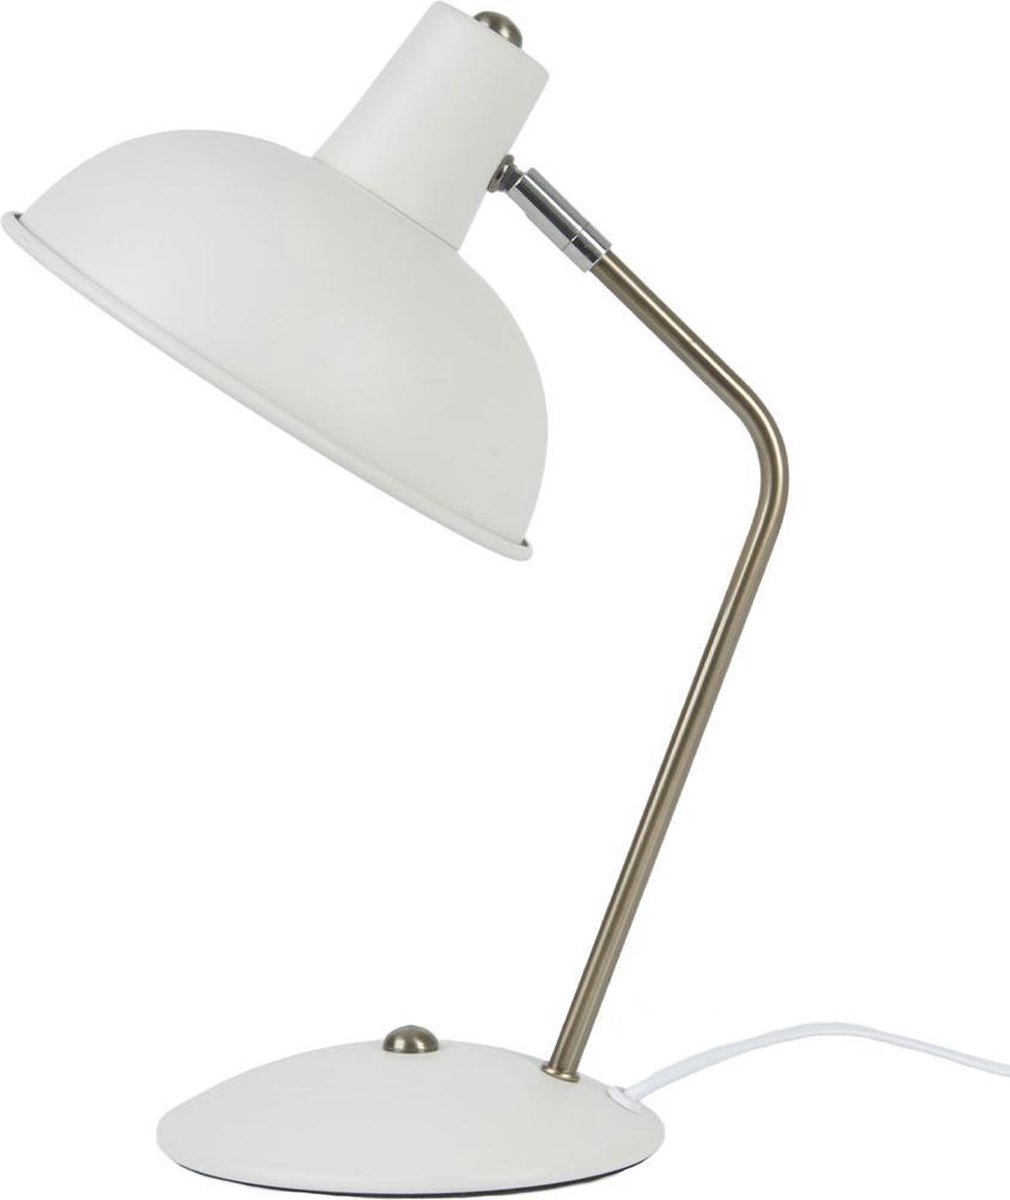 Leitmotiv Hood Tafellamp - Blanco